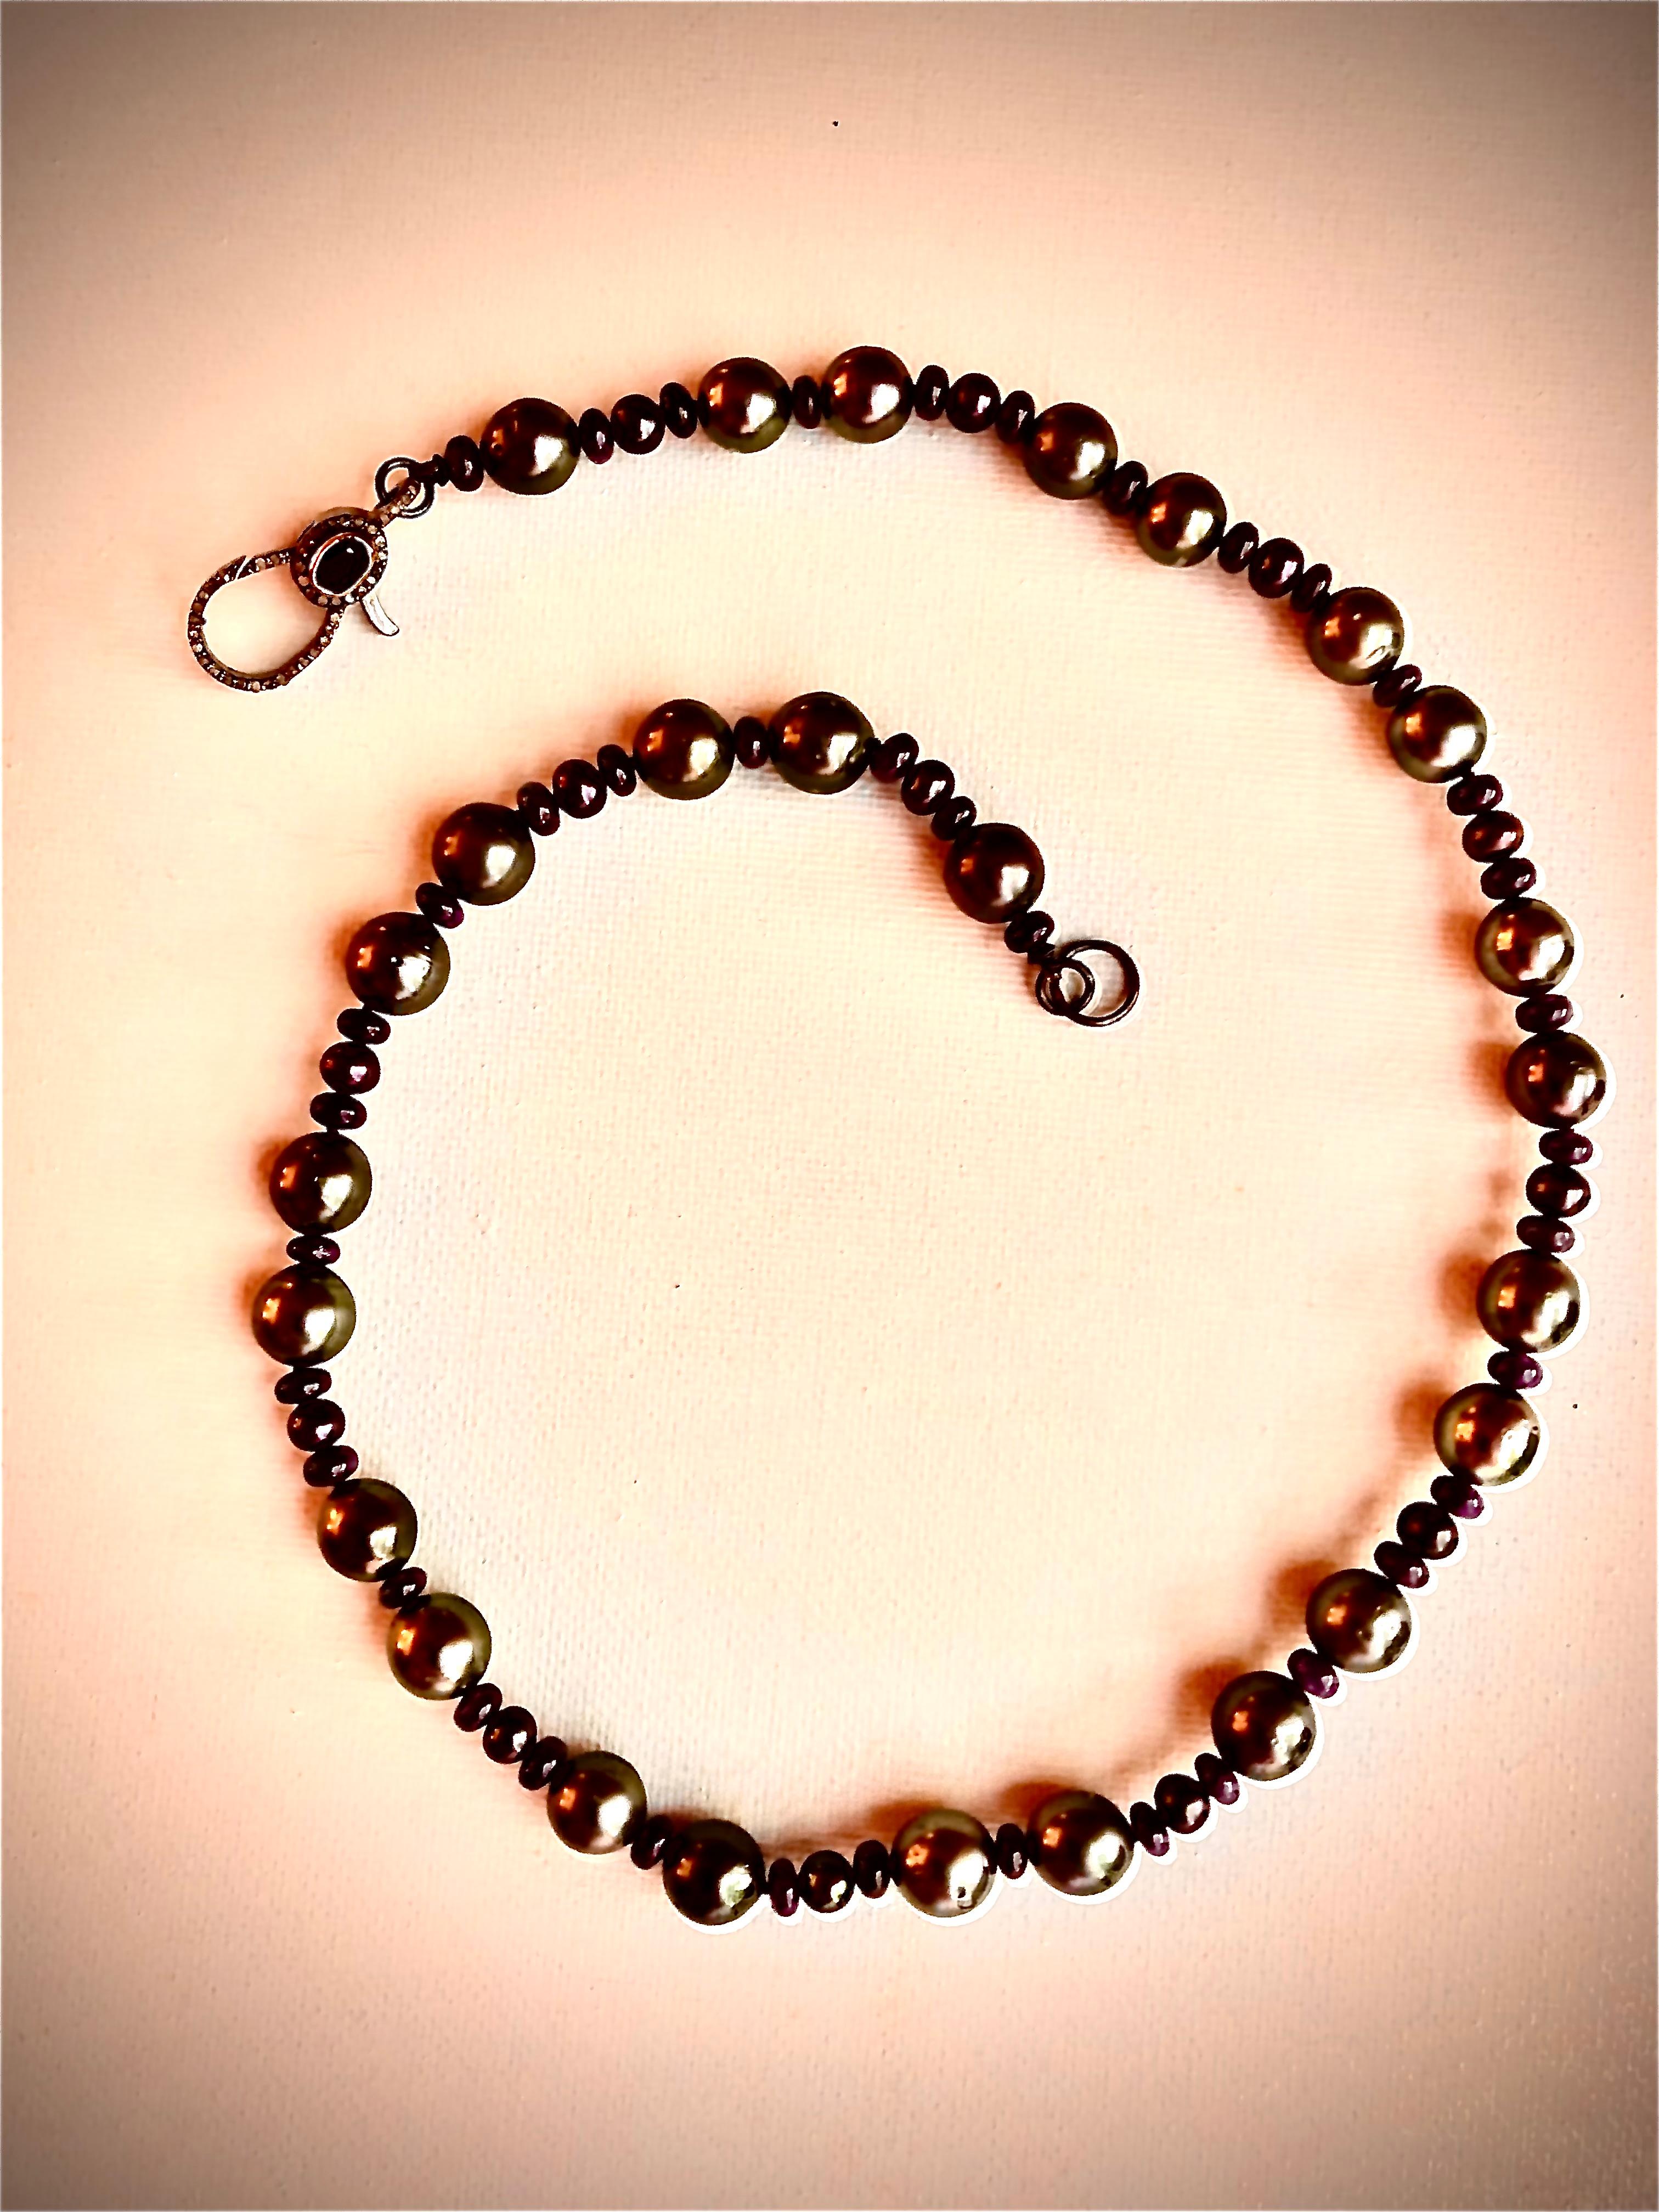 Einzelner Strang mit ca. 9,96 mm leuchtend grauen, fast runden Tahiti-Perlen. Größere Perlen wechseln sich mit kleineren schwarzen Pfauenperlen ab, die von blauen glatten Saphir-Rondellen flankiert werden.

Die Halskette ist mit einem oxidierten